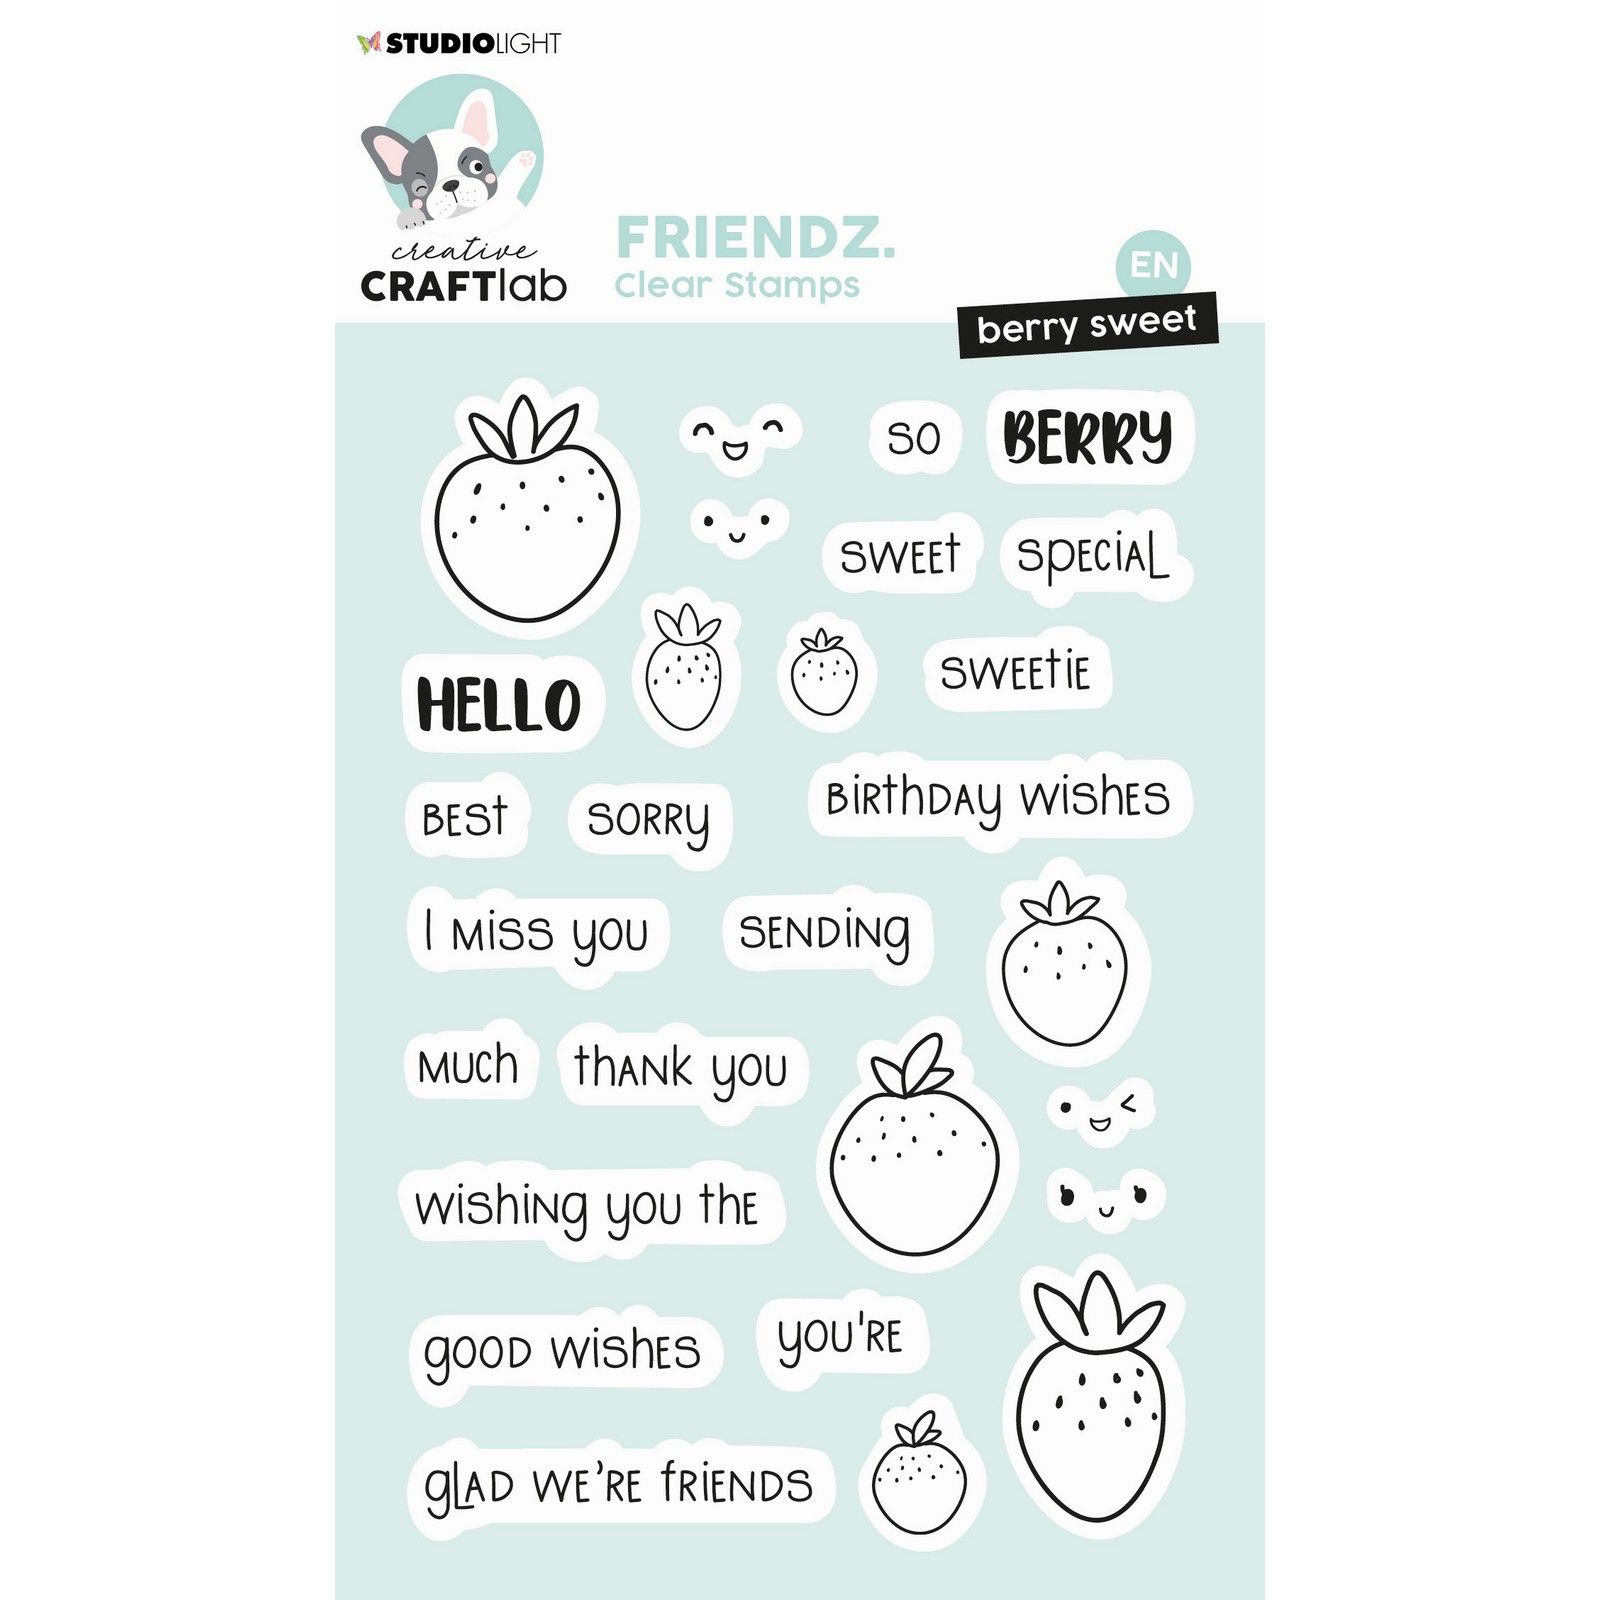 Creative Craftlab • Friendz Clear Stamp Hello Sweetie